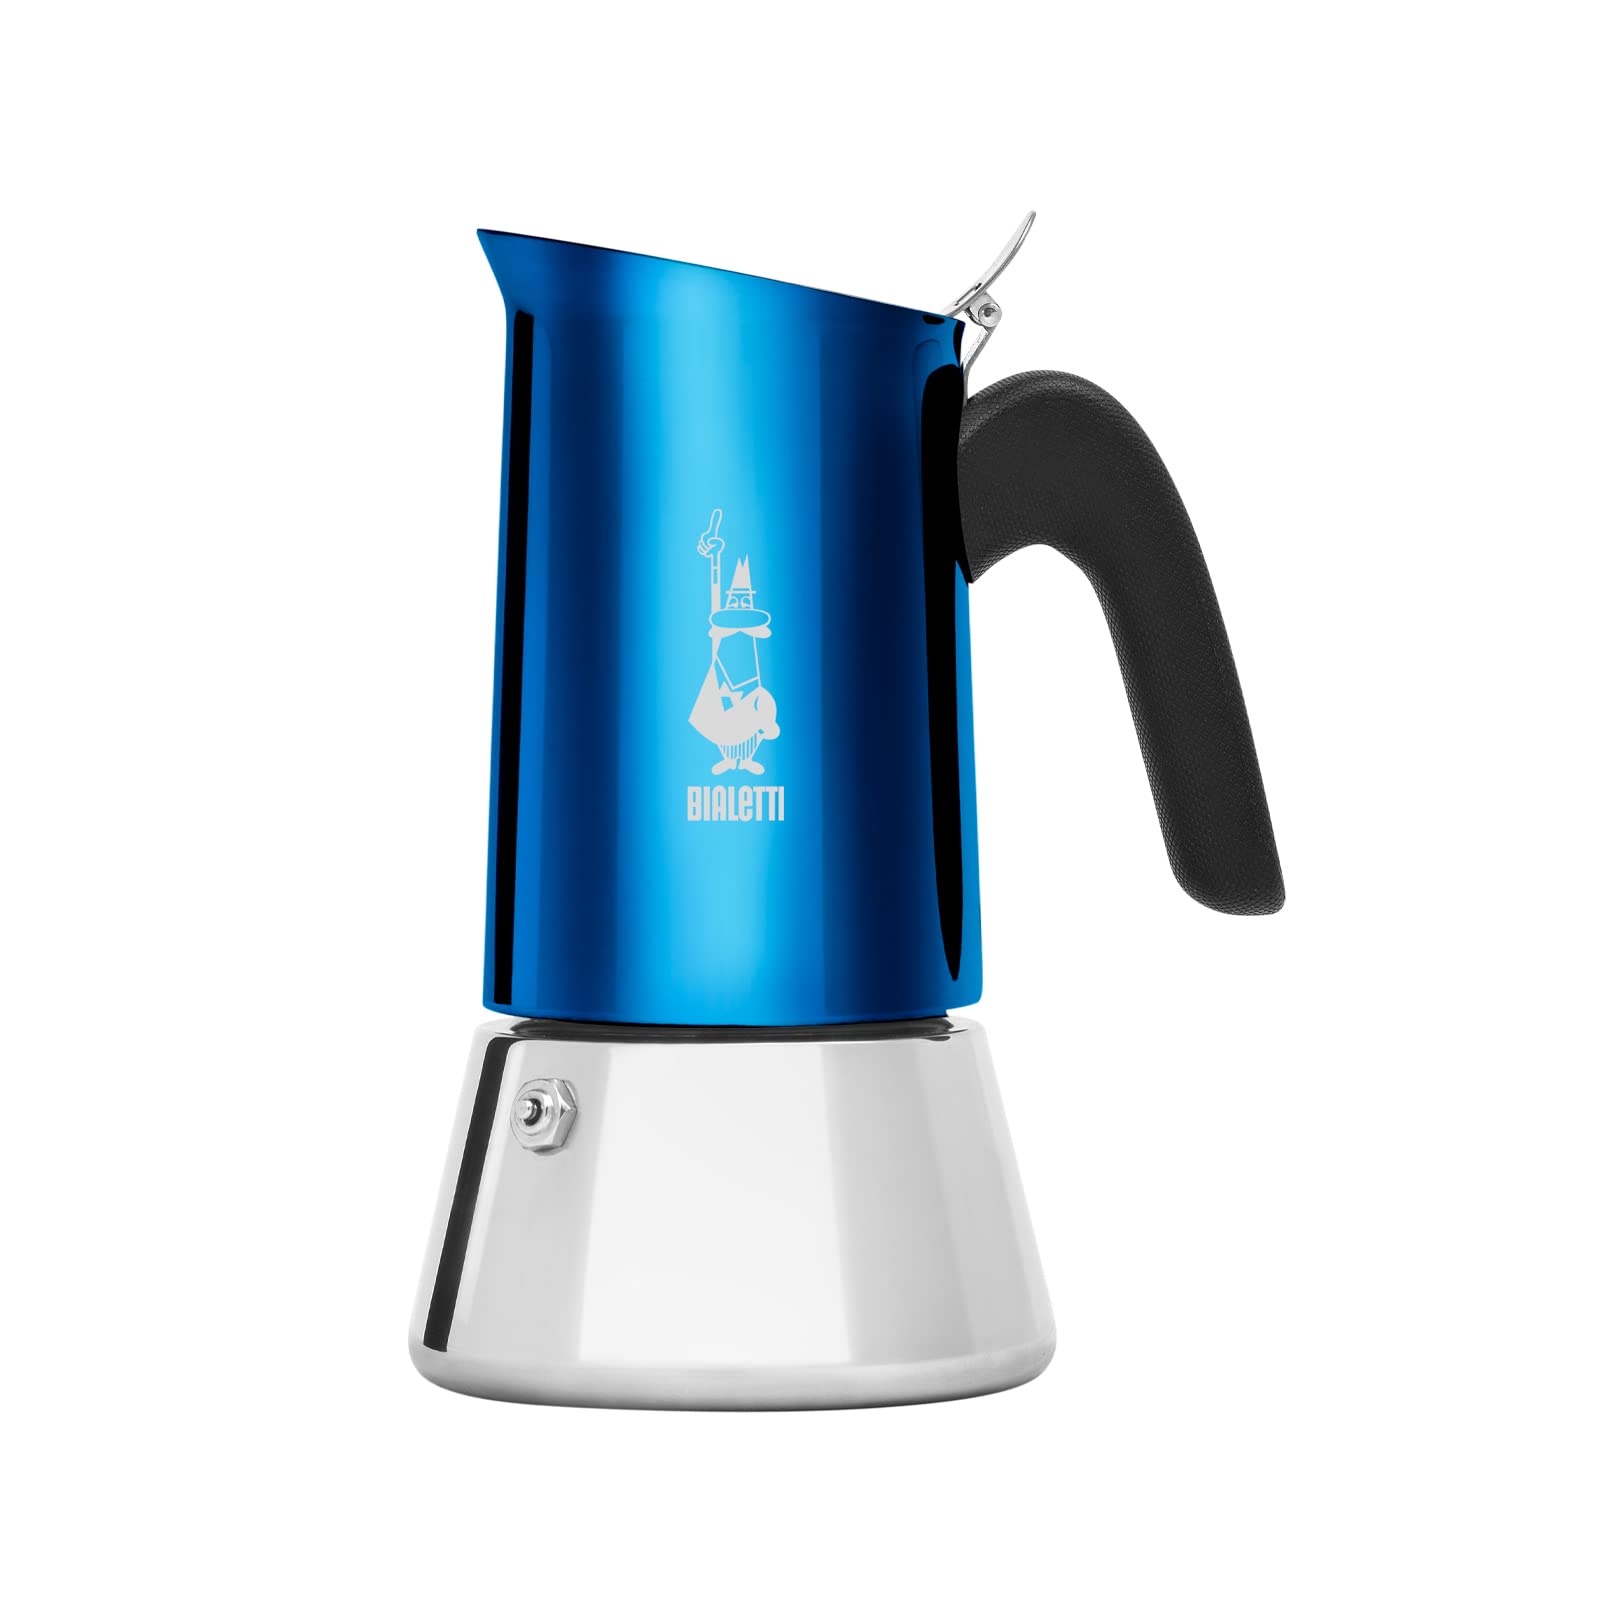 Bialetti New Venus Kaffeemaschine 6 Tassen, Anti-Brand-Griff, nicht für Induktion geeignet, 6 Tassen (235 ml), Edelstahl, Blau